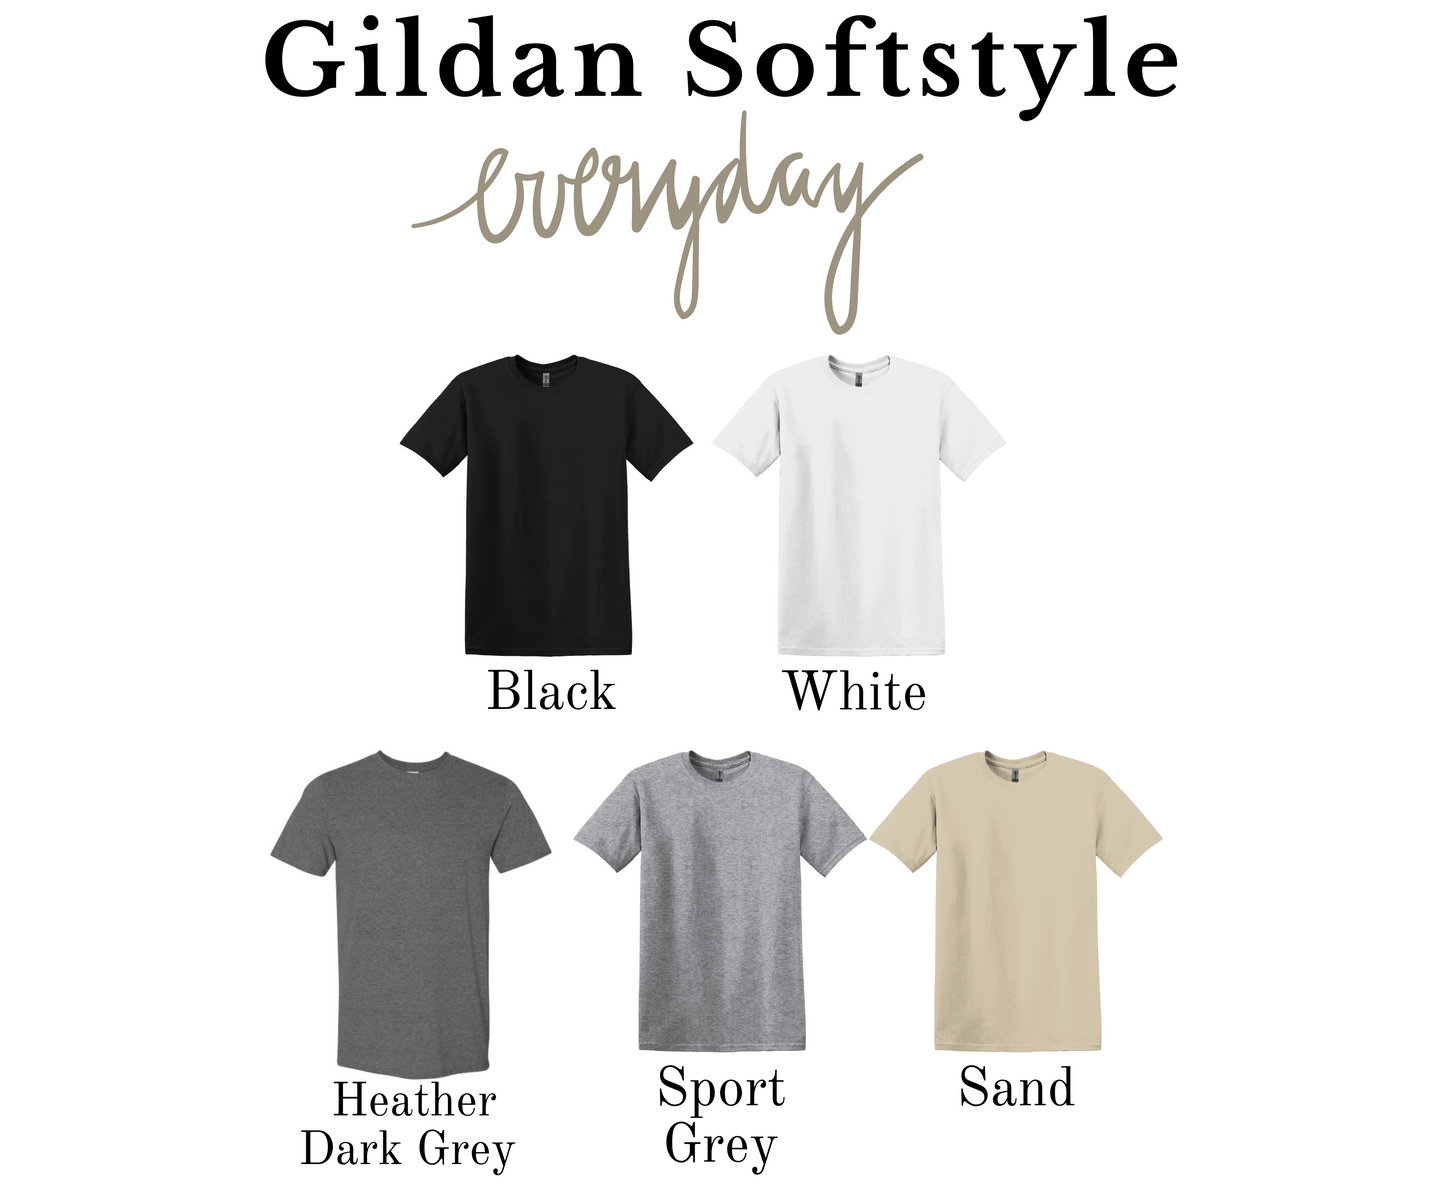 Christmas Dogs Gildan Softstyle T-shirt